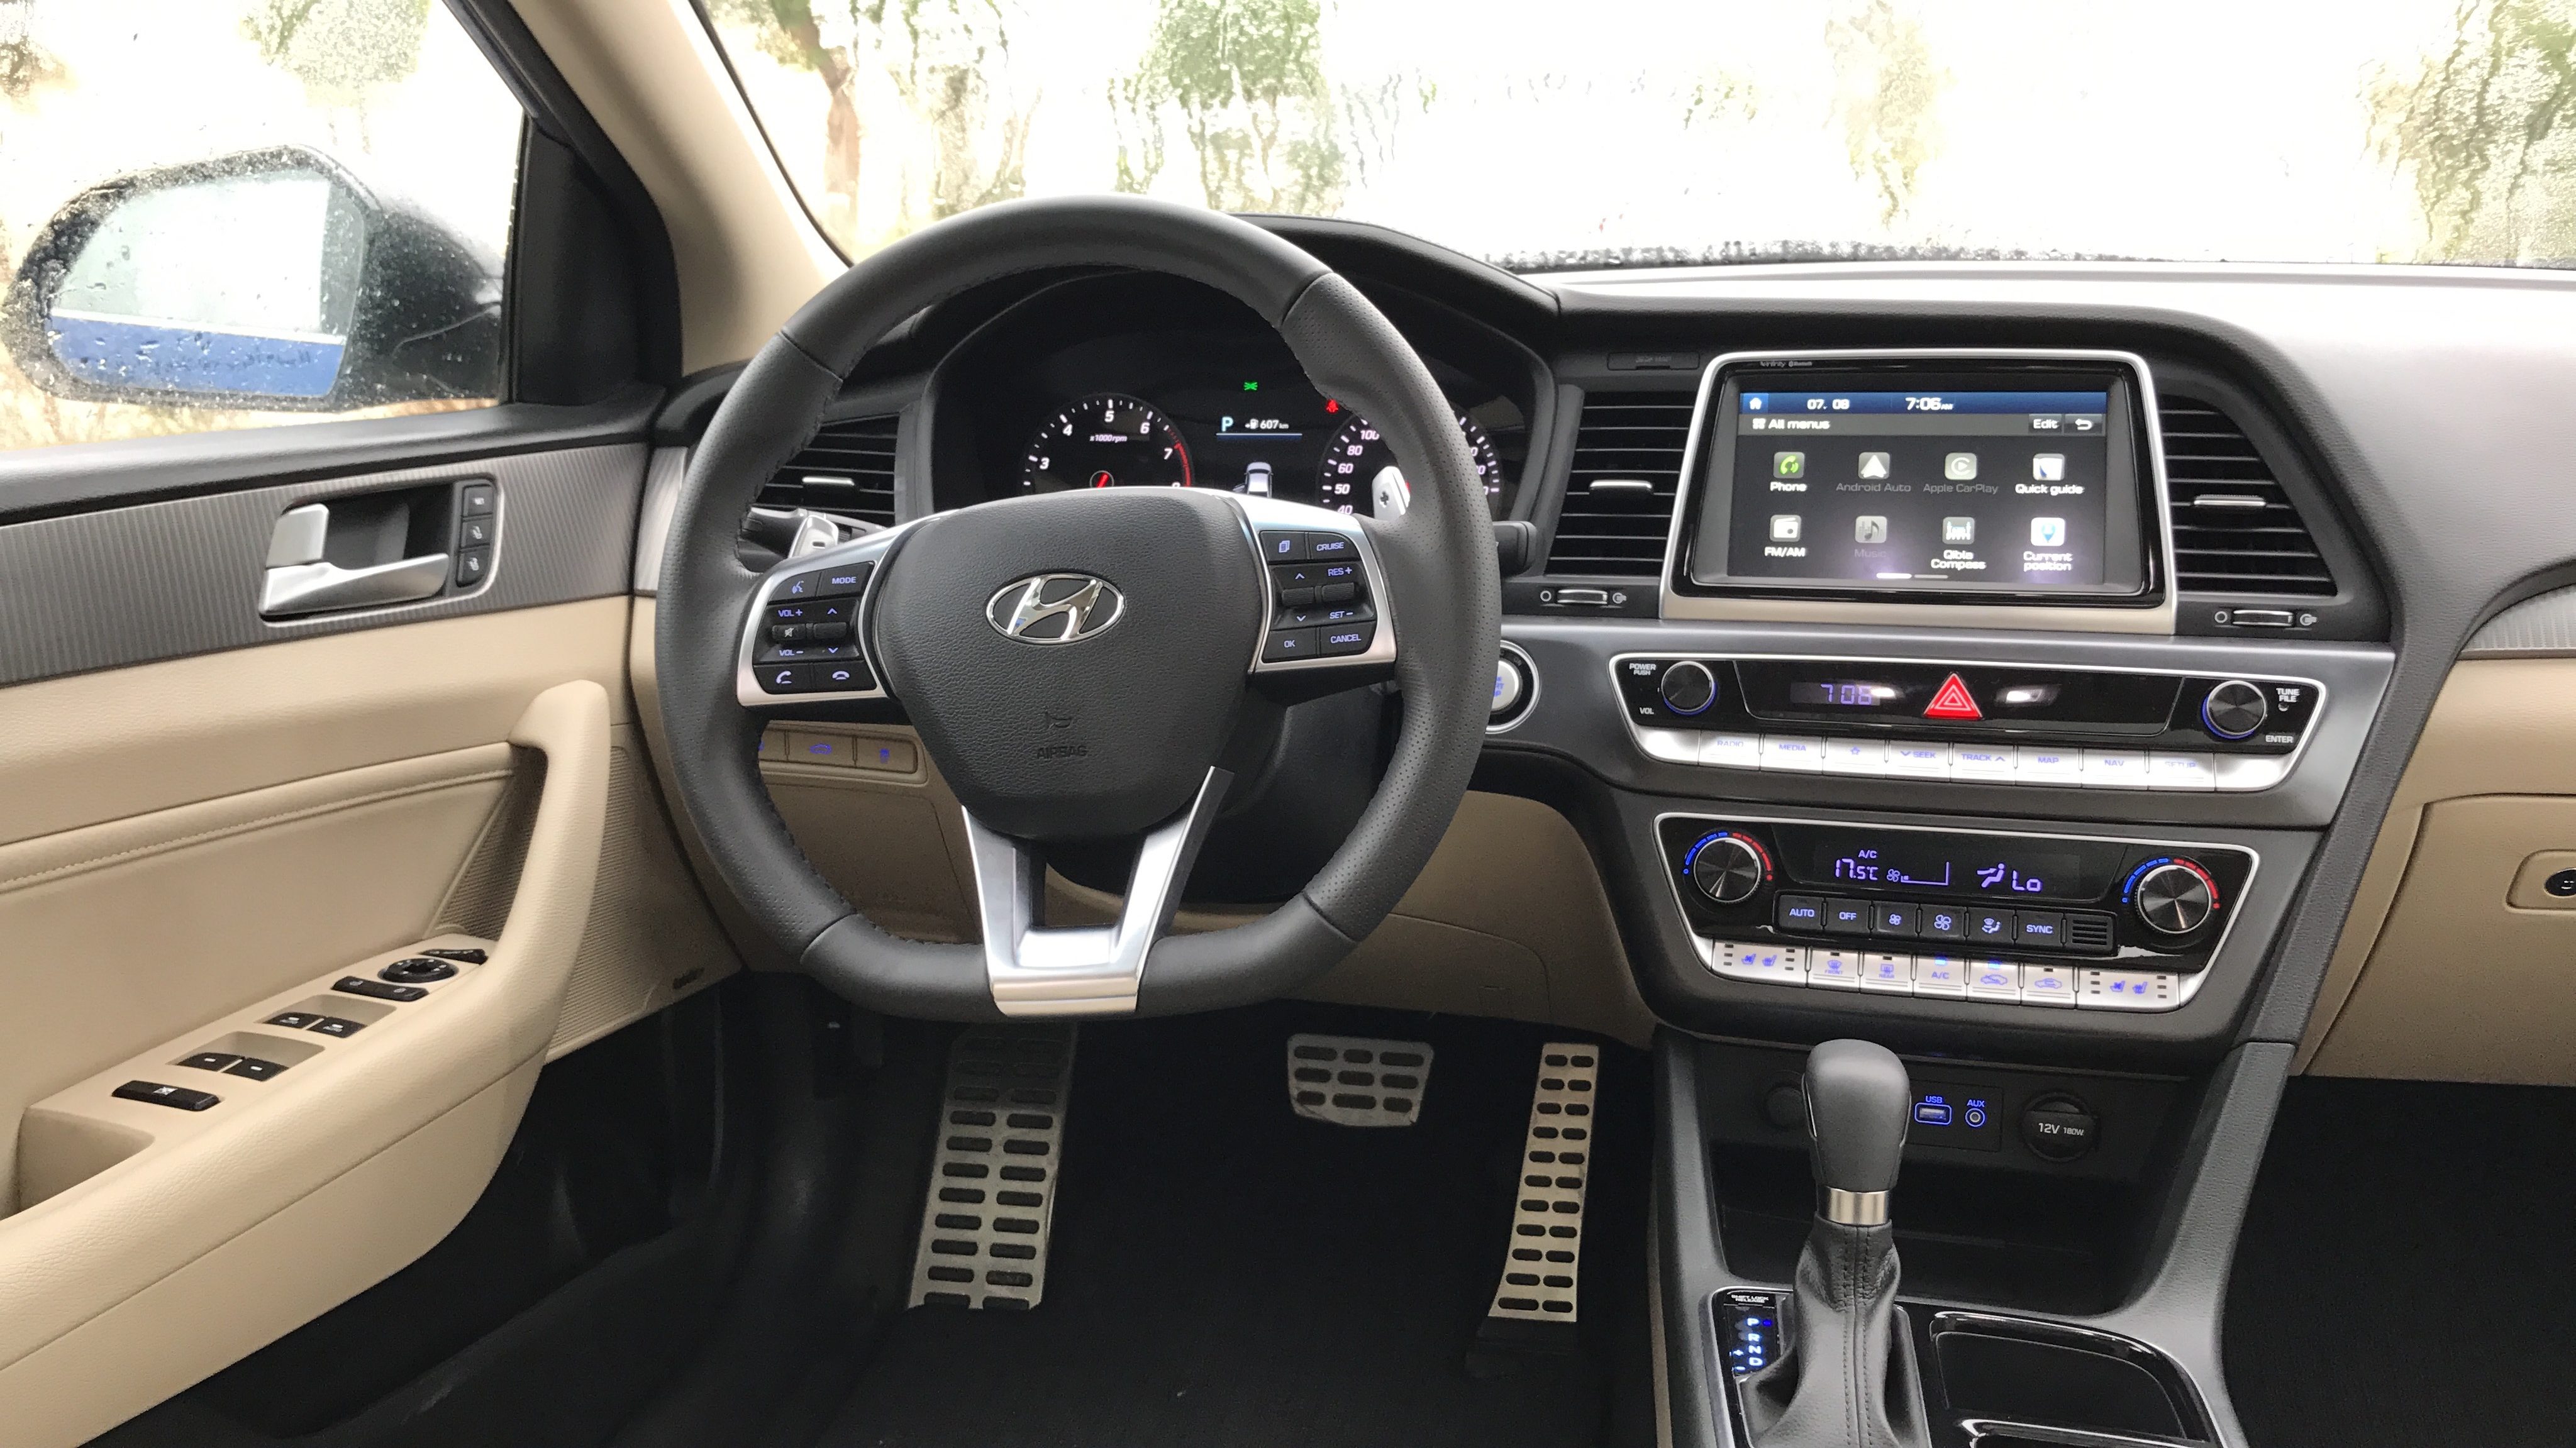 هيونداي سوناتا 2018 الشكل المحدث "صور ومواصفات واسعار وتقرير" Hyundai Sonata 4